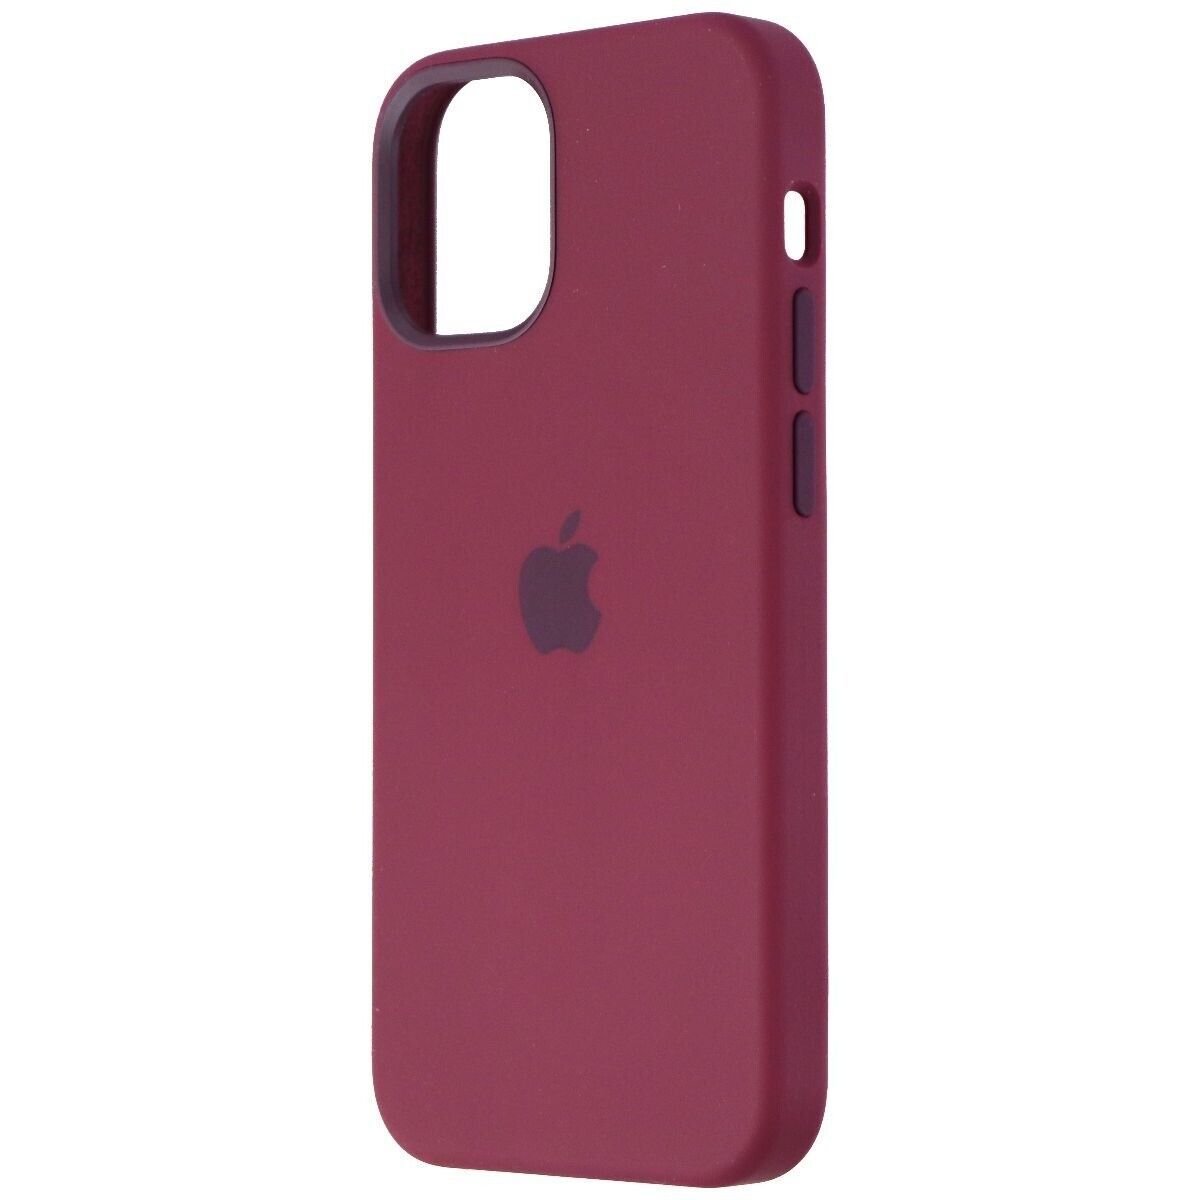 MagSafe対応 Apple 純正品◆iPhone 12 mini Silicone Case with MagSafe - Plum シリコーンケース -プラム アップル【並行輸入品】_画像3